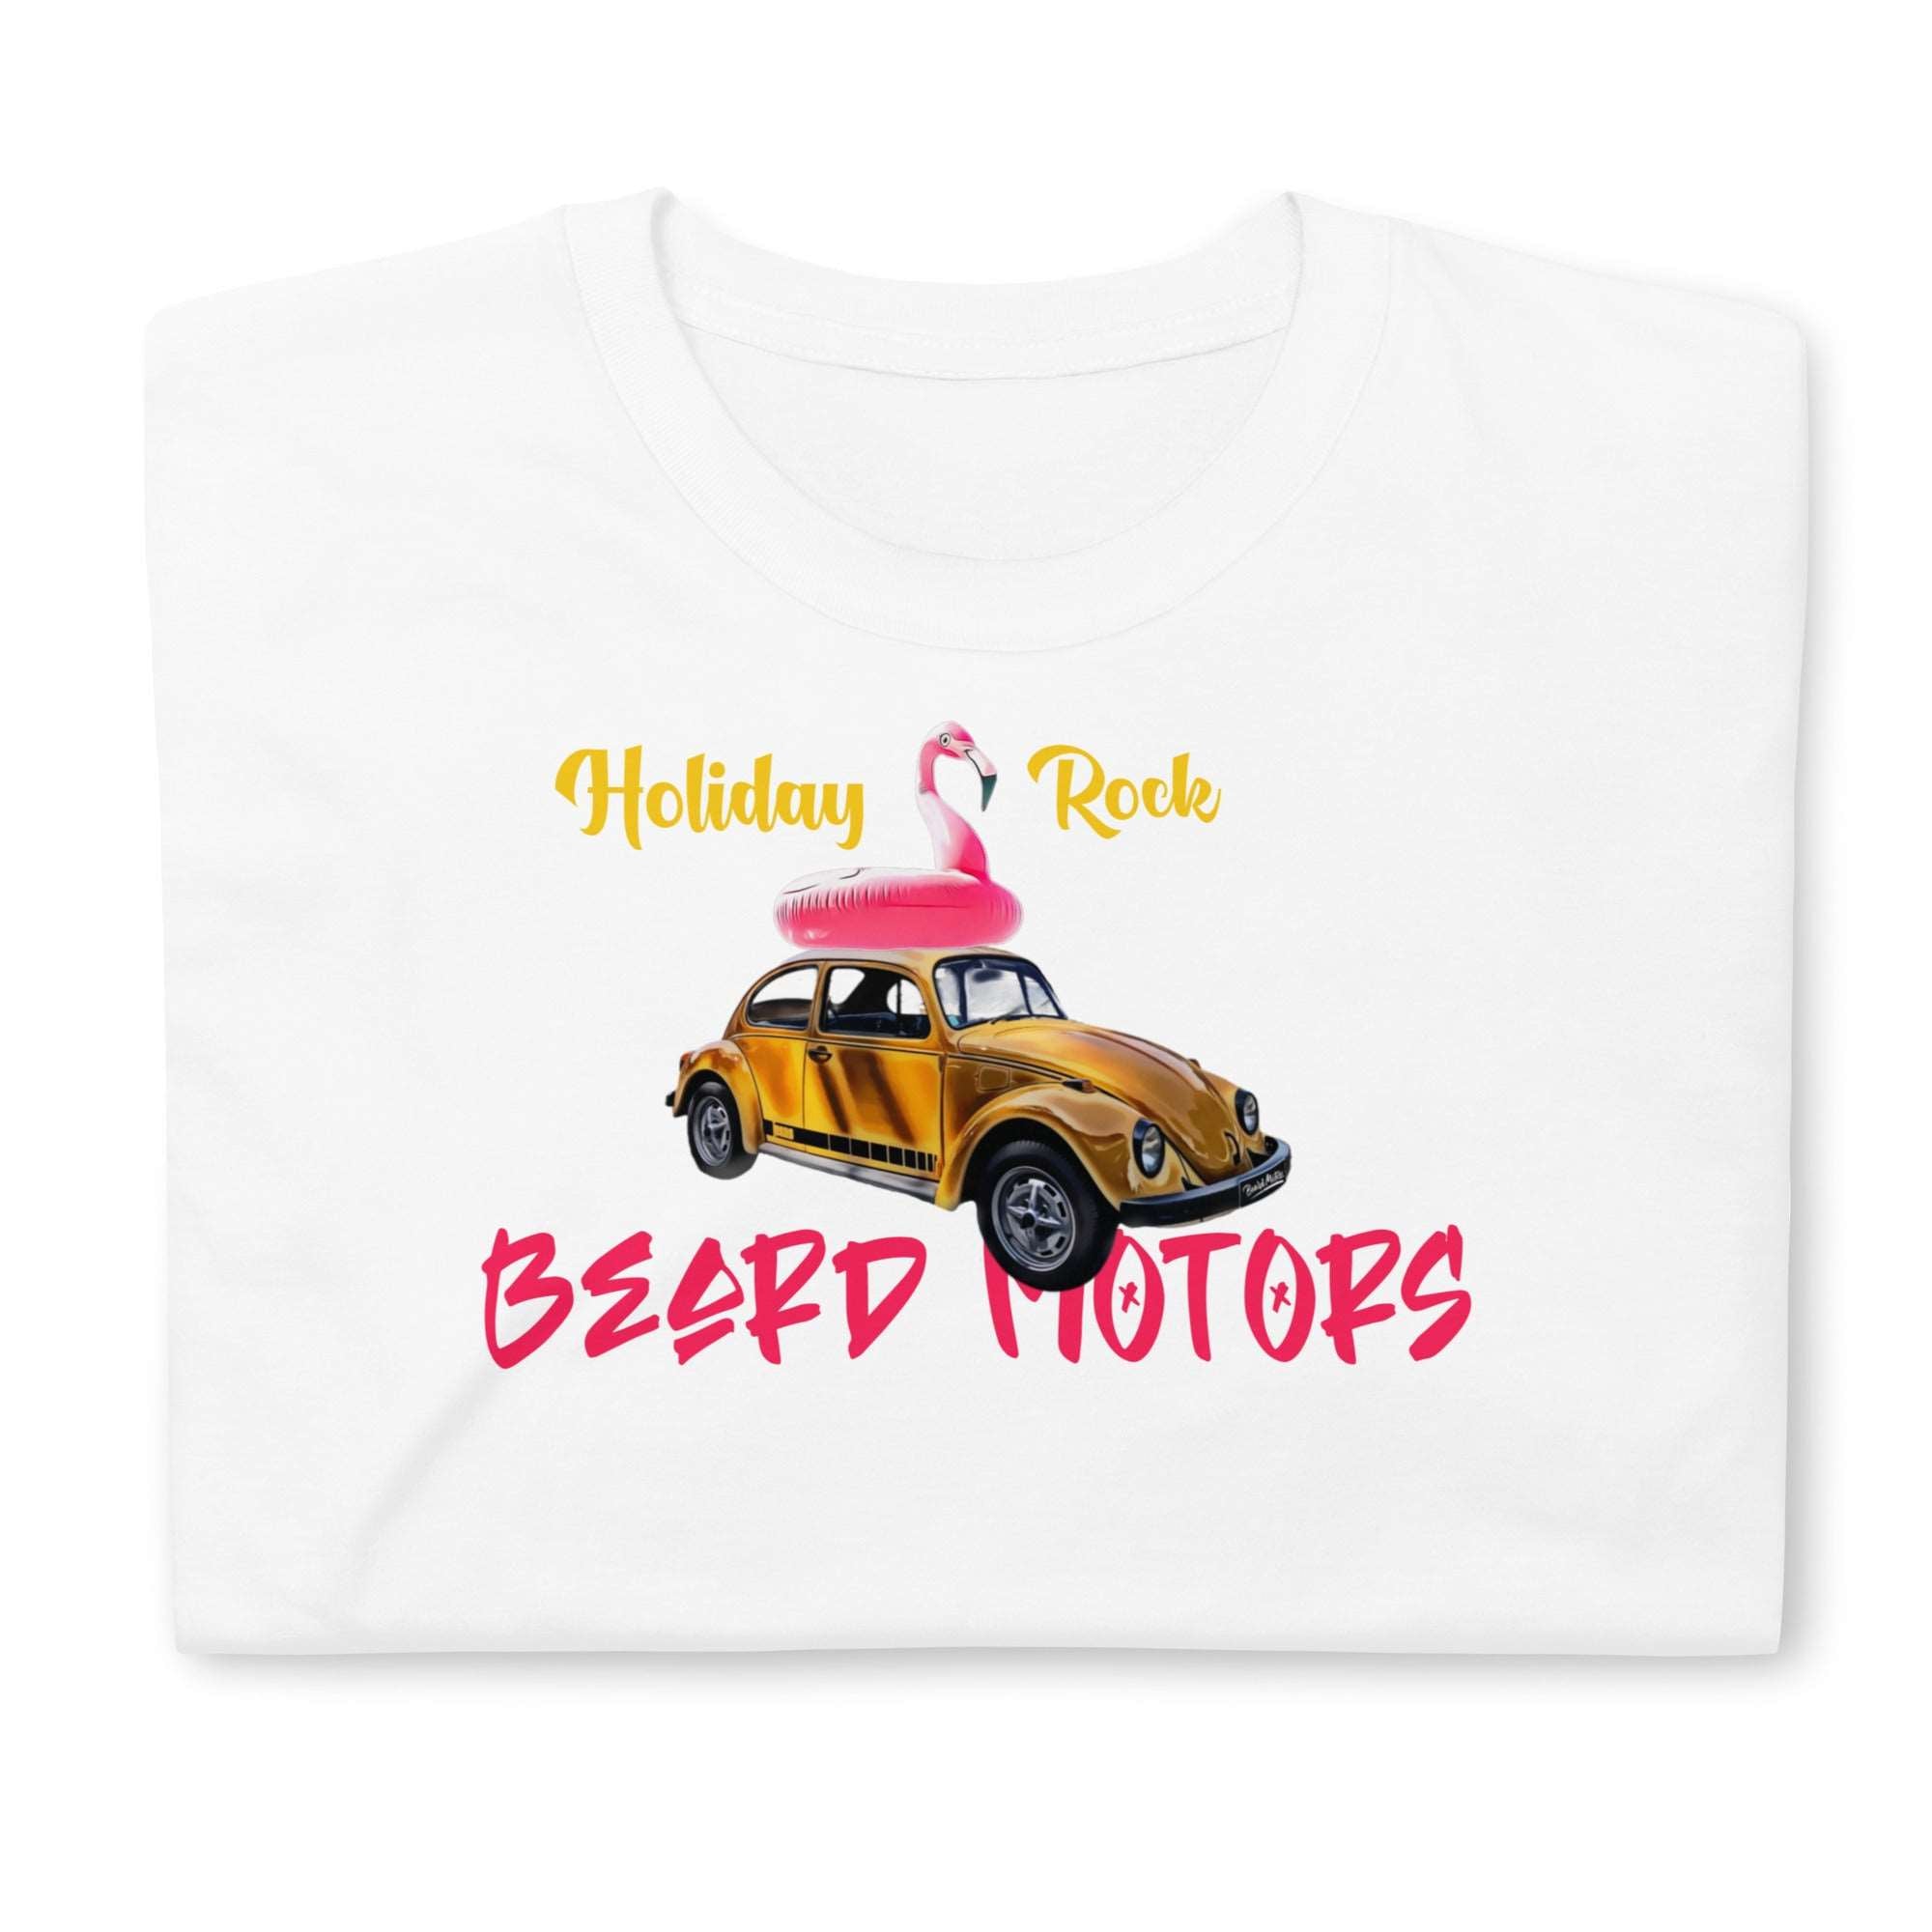 Beard Motors Holiday Rock Beetle T-Shirt white